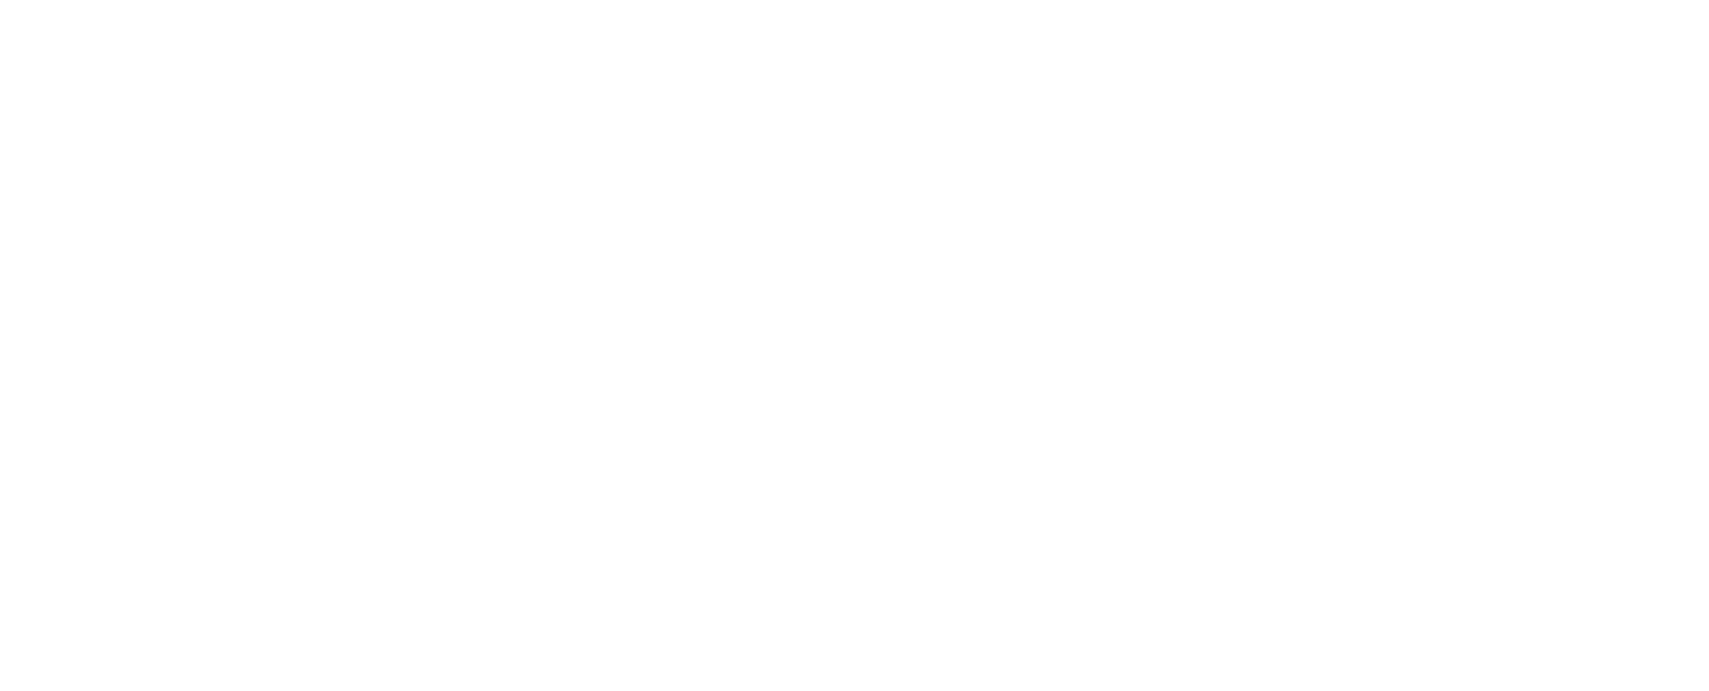 The Funhouse logo